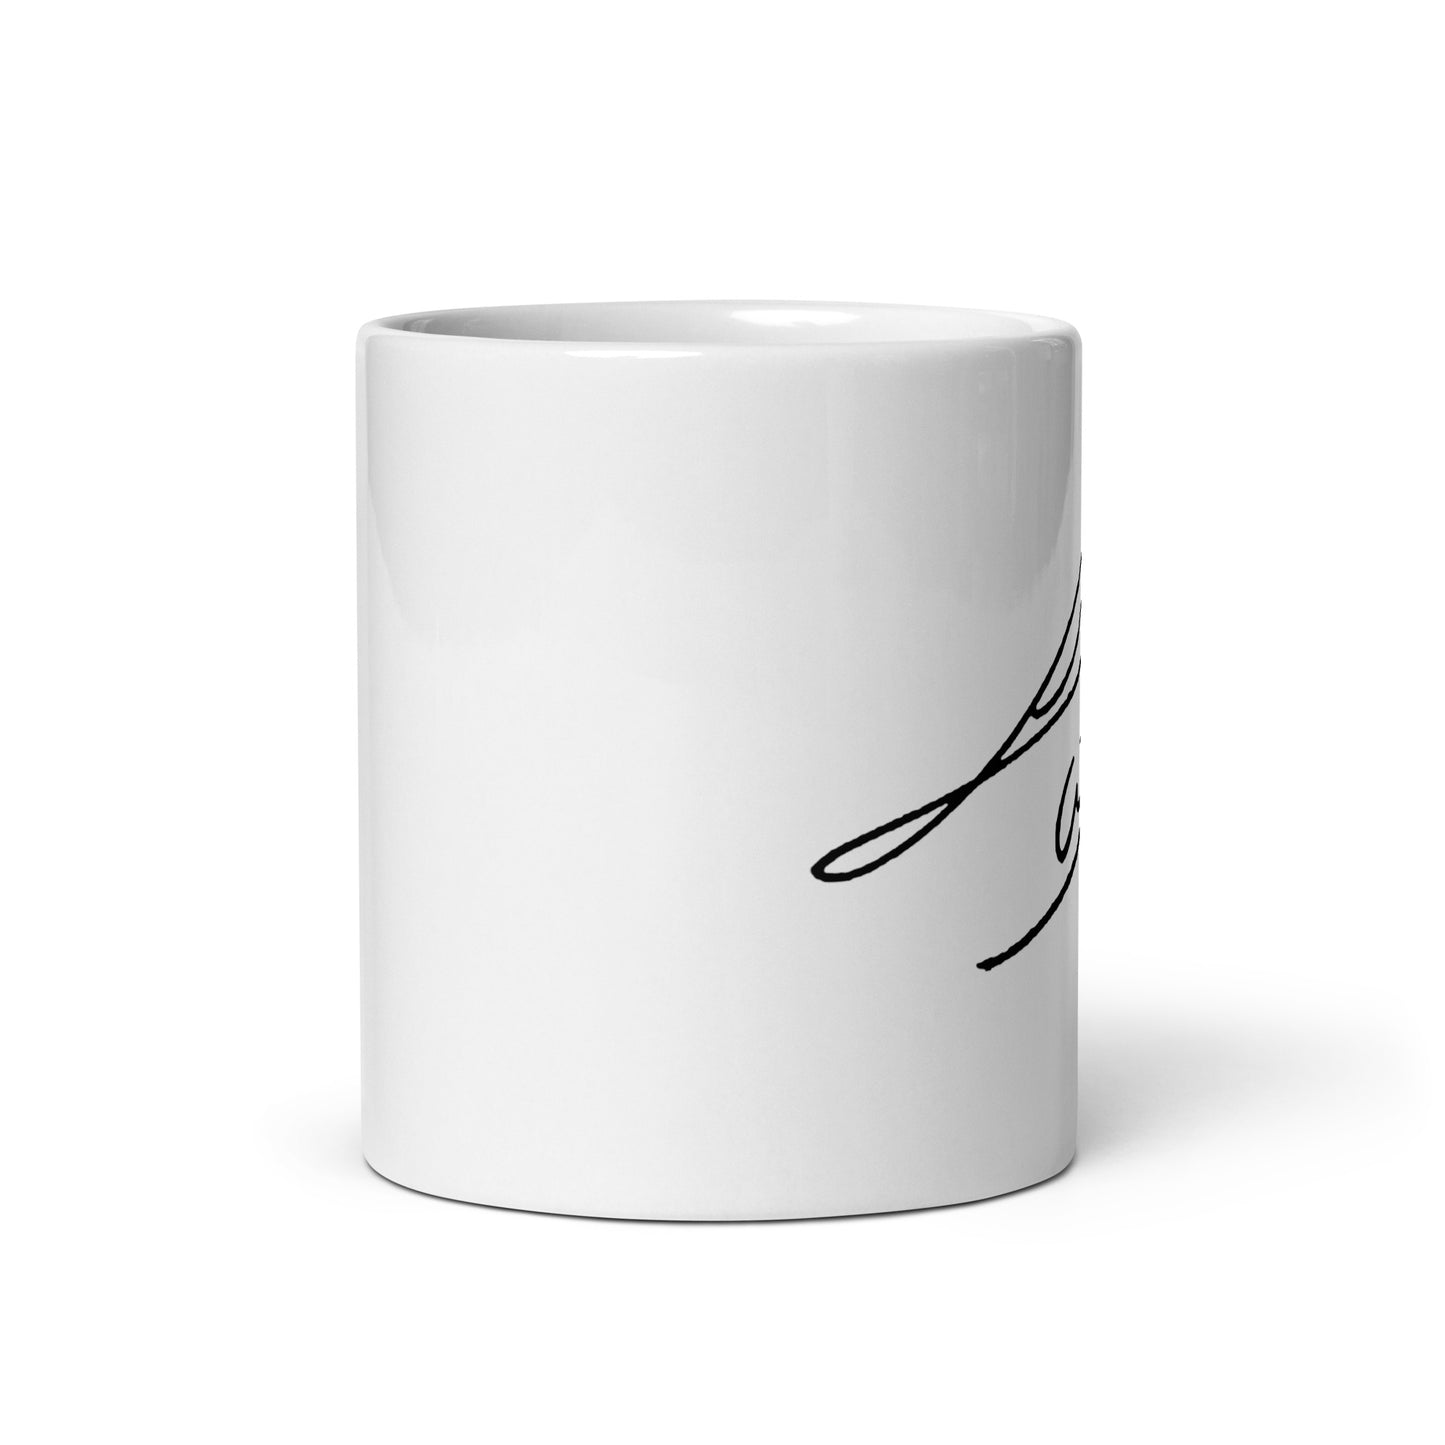 SEVENTEEN Woozi, Lee Ji-hoon Signature Ceramic Mug